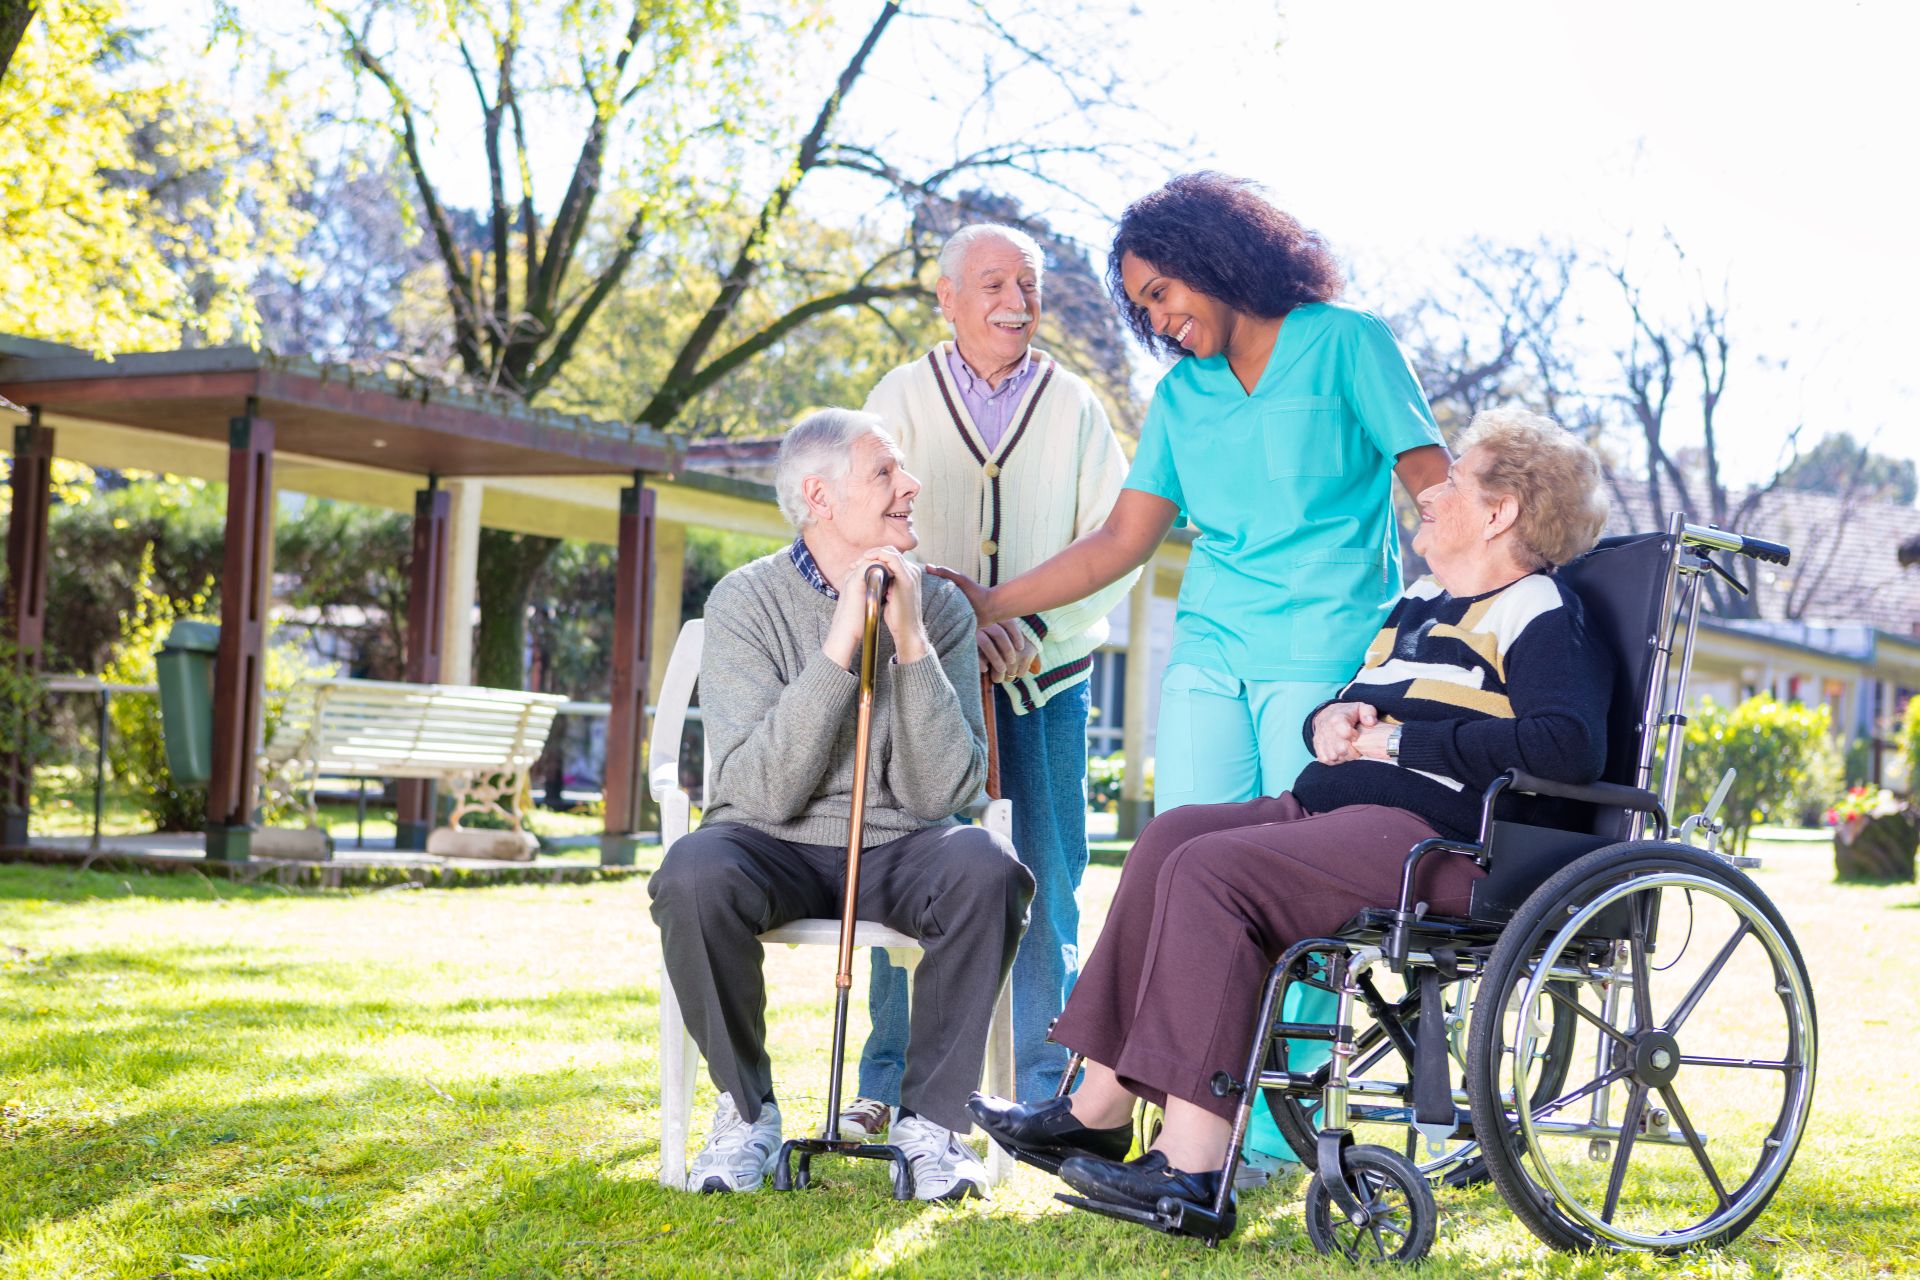 Đội ngũ nhân viên tại viện dưỡng lão là một yếu tố quan trọng quyết định đến chất lượng dịch vụ và mức chi phí.